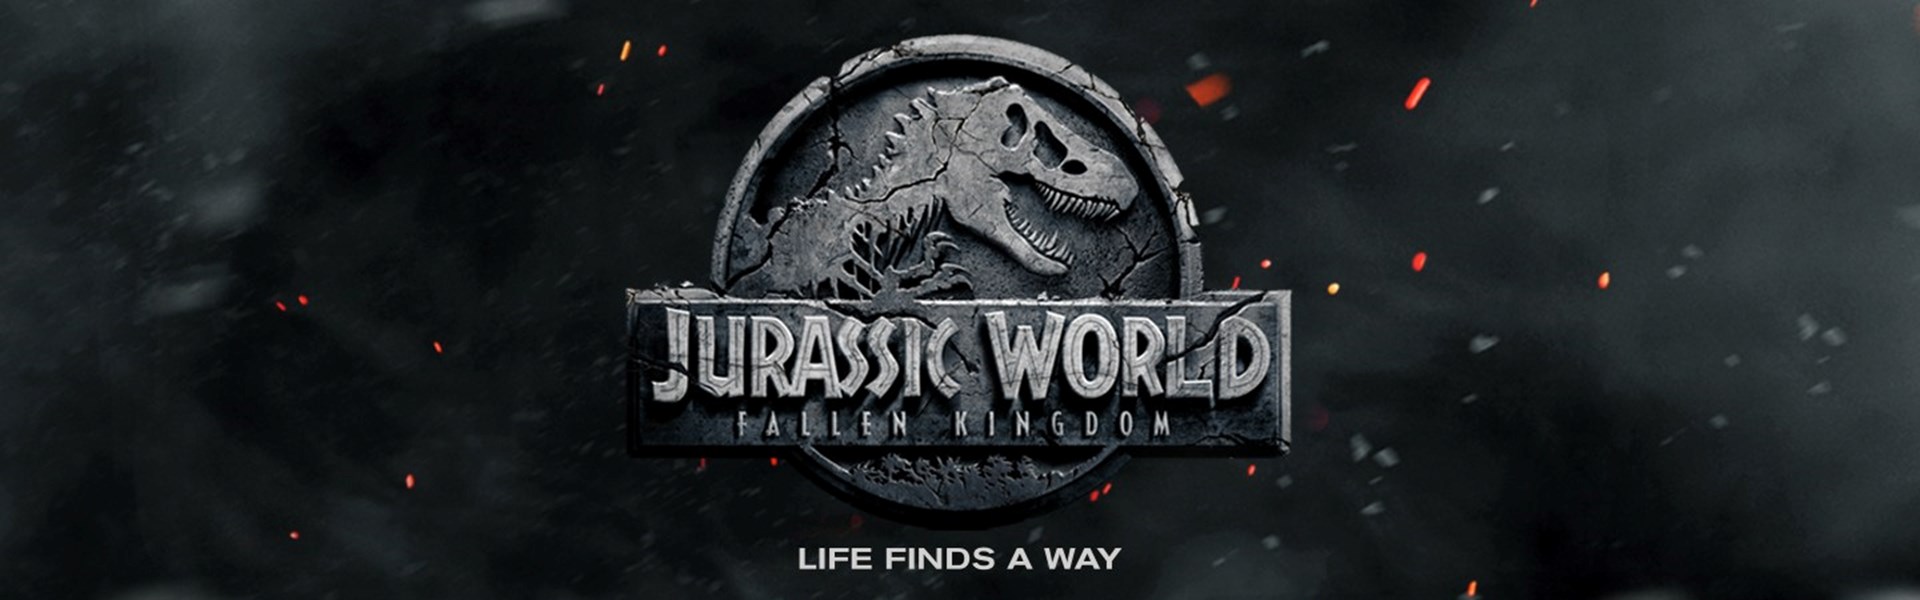 FILM: Jurassic World - Fallen Kingdom